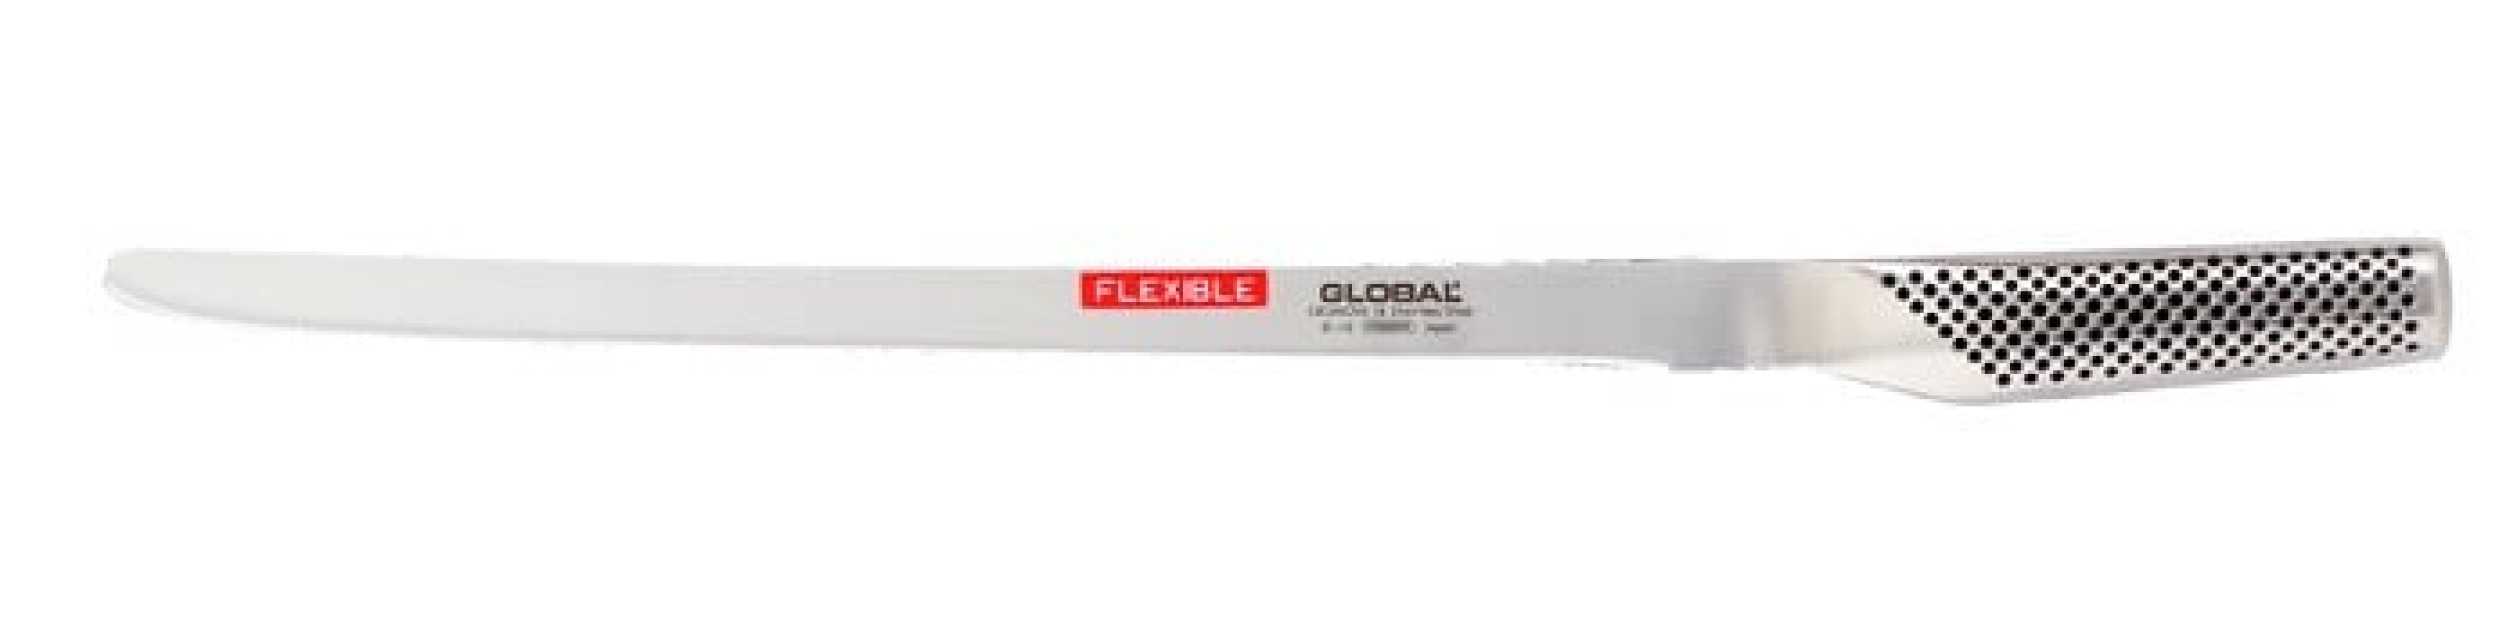 Laxkniv G-10 31 cm, flexibel - Global